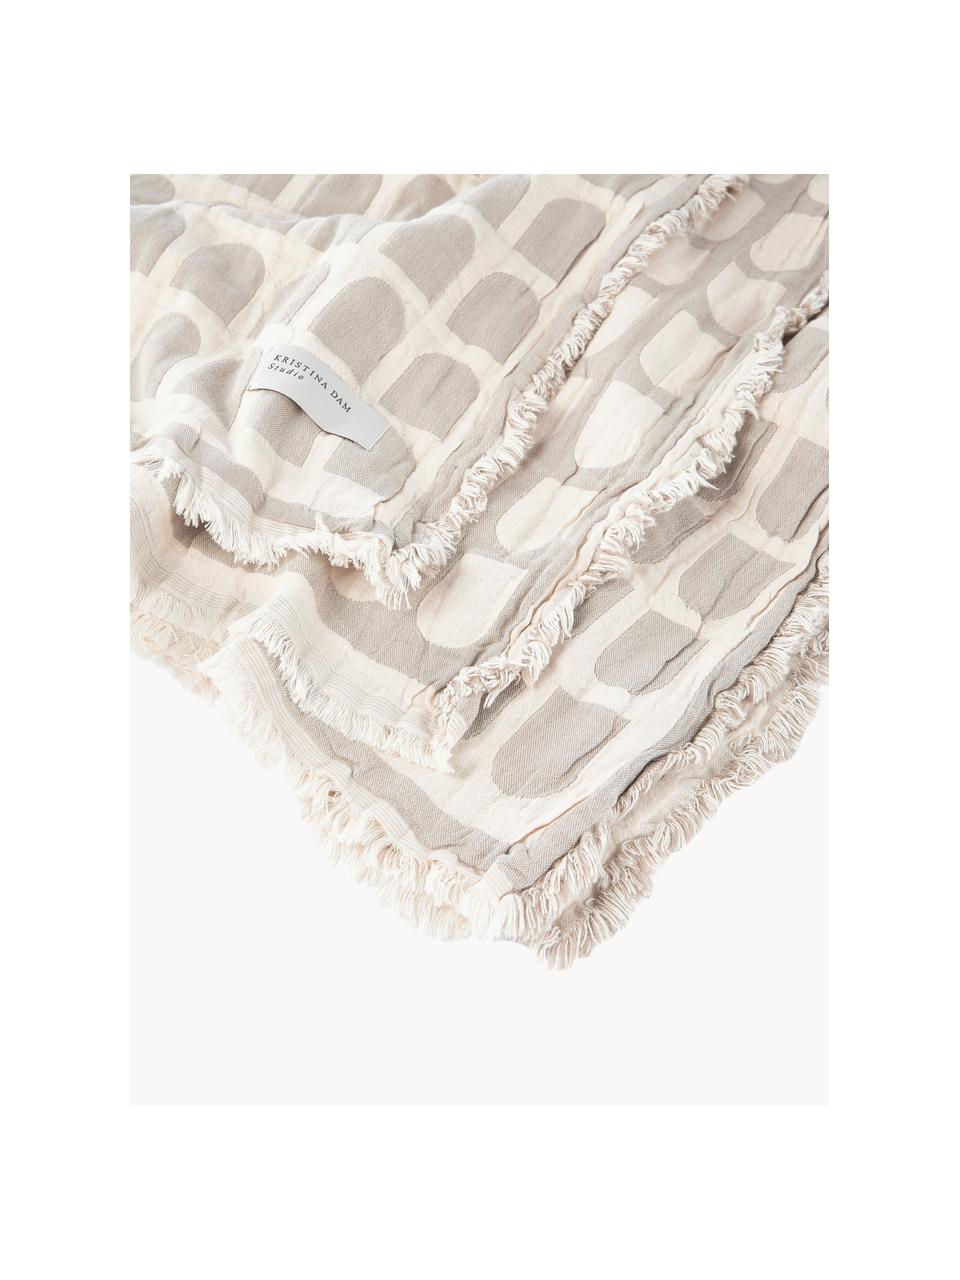 Bavlněný pléd Architecture, 100 % bavlna, Béžová, krémově bílá, Š 130 cm, D 180 cm